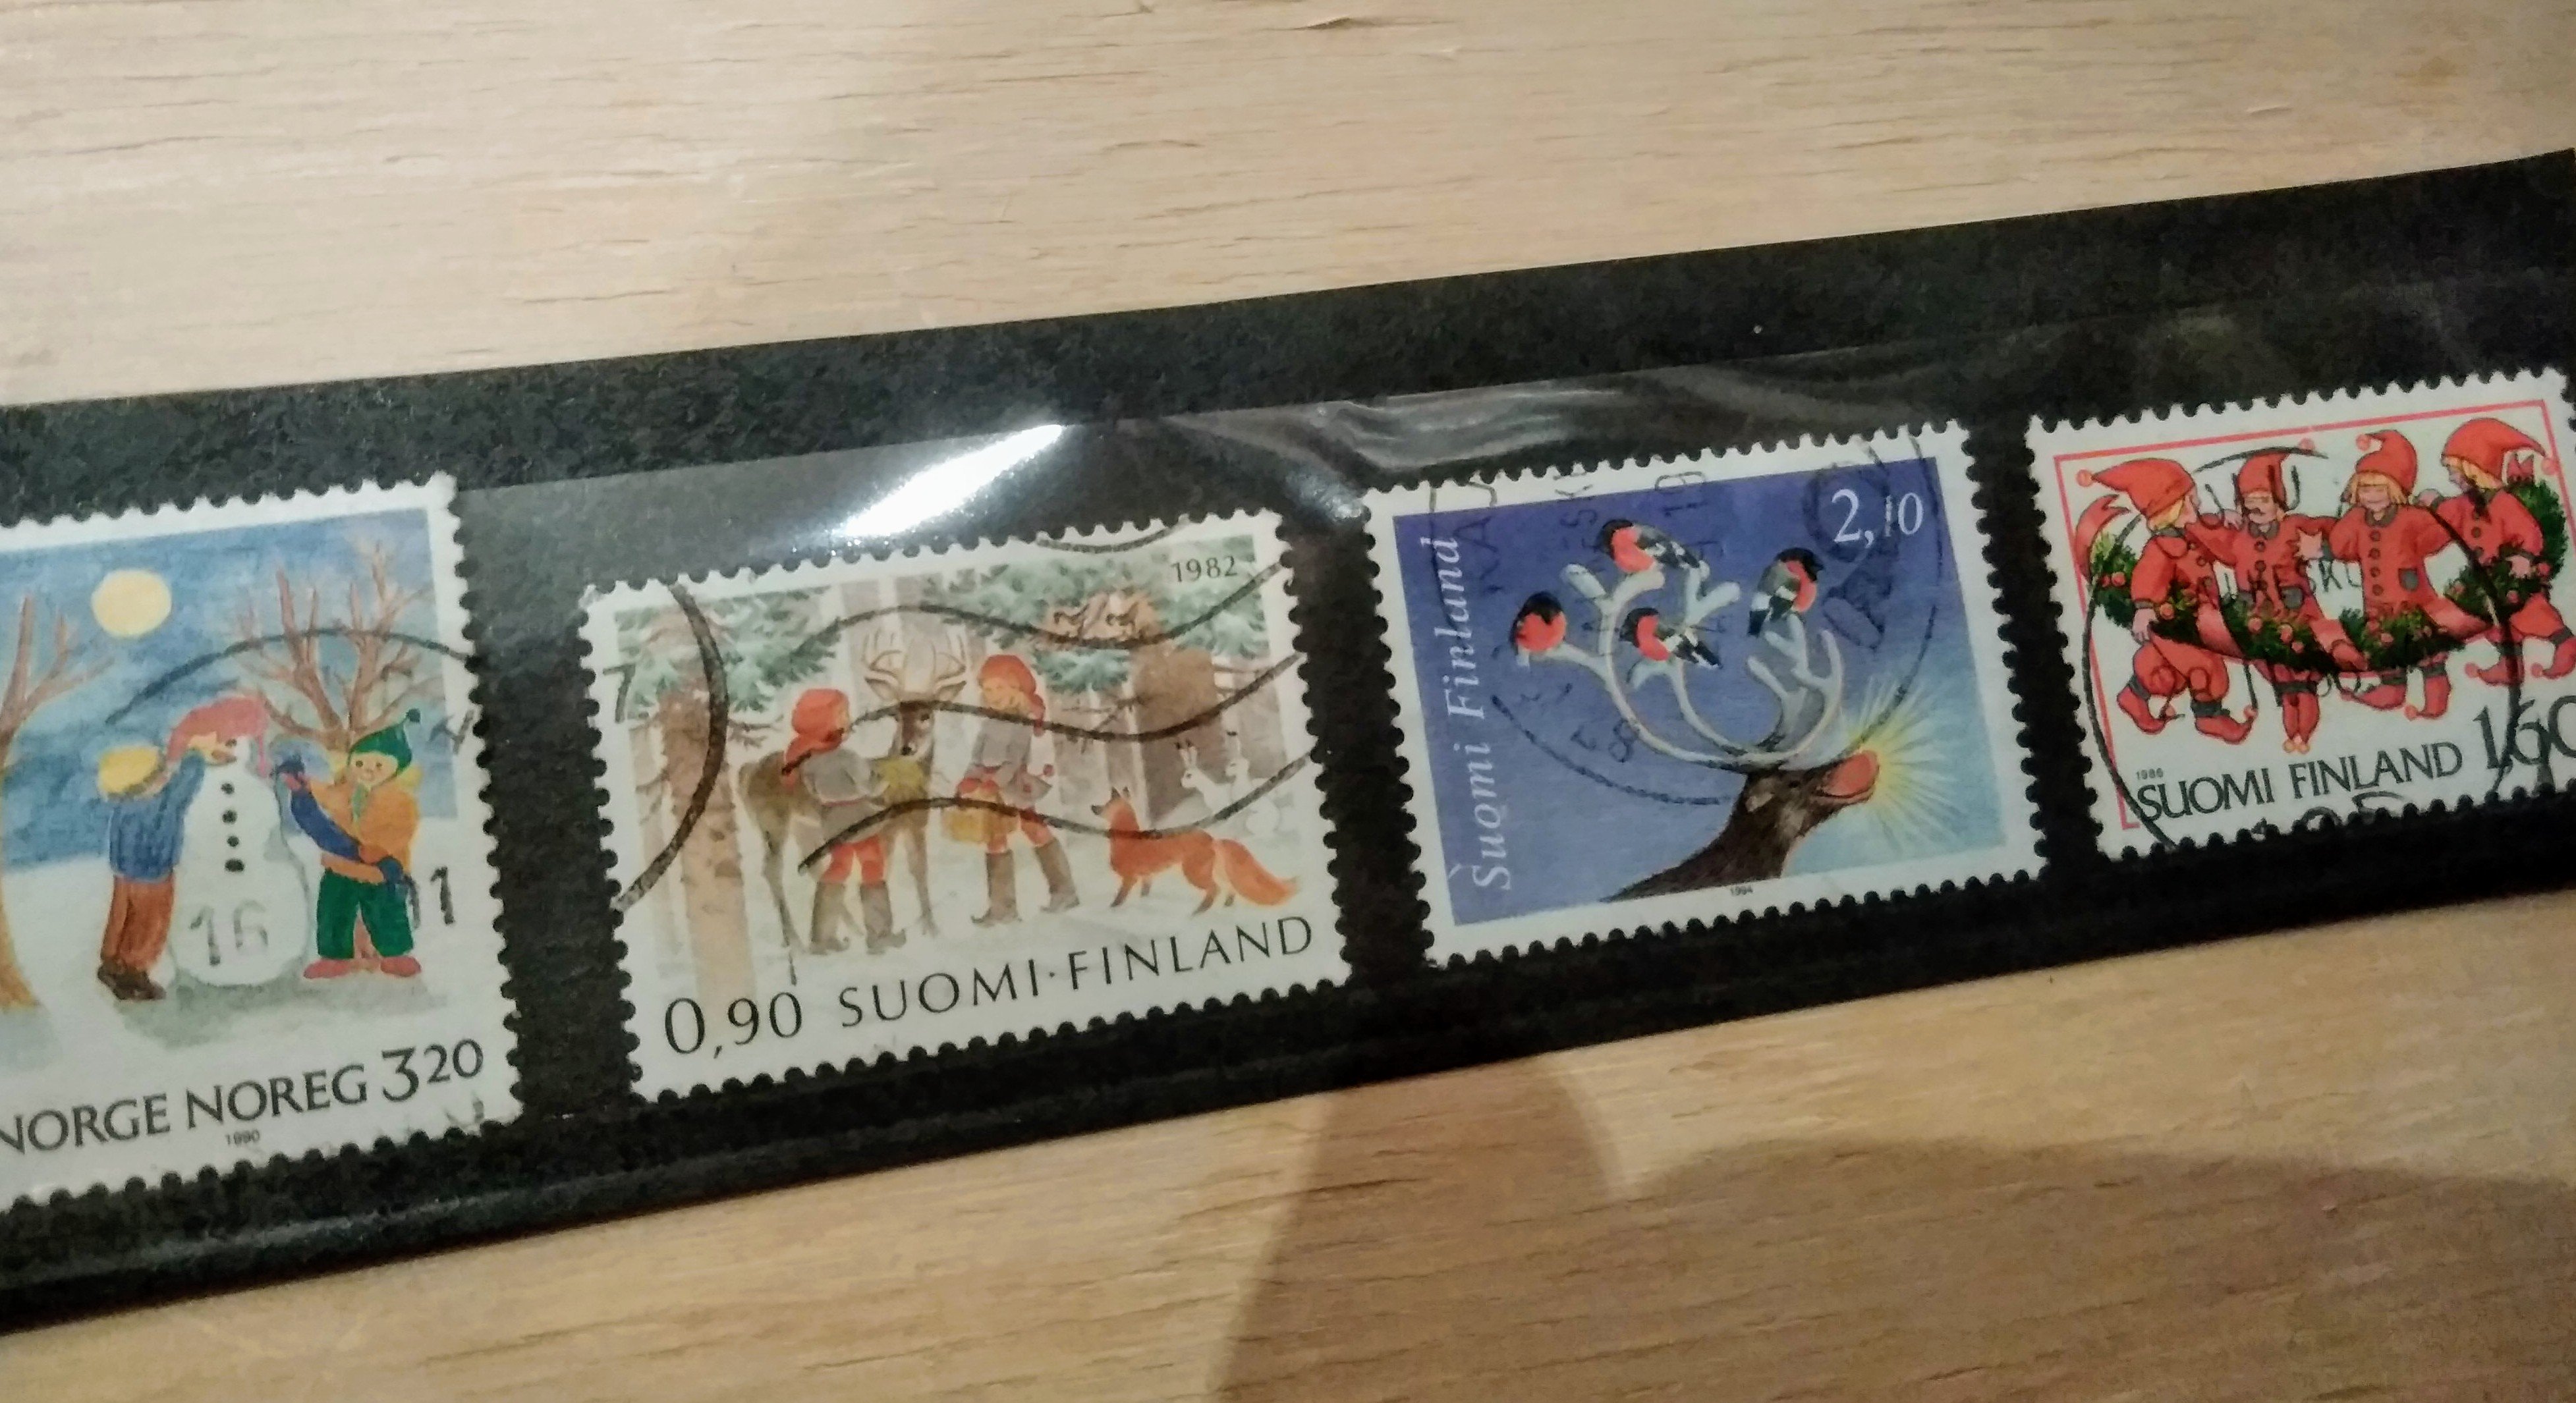 クリスマス切手発売もスタート4種セット 可愛い切手コレクションに クリスマスカードの飾りに 神楽坂 ねこの郵便局 クリスマス 19 11 08 神楽坂ねこの郵便局というなまえのお店